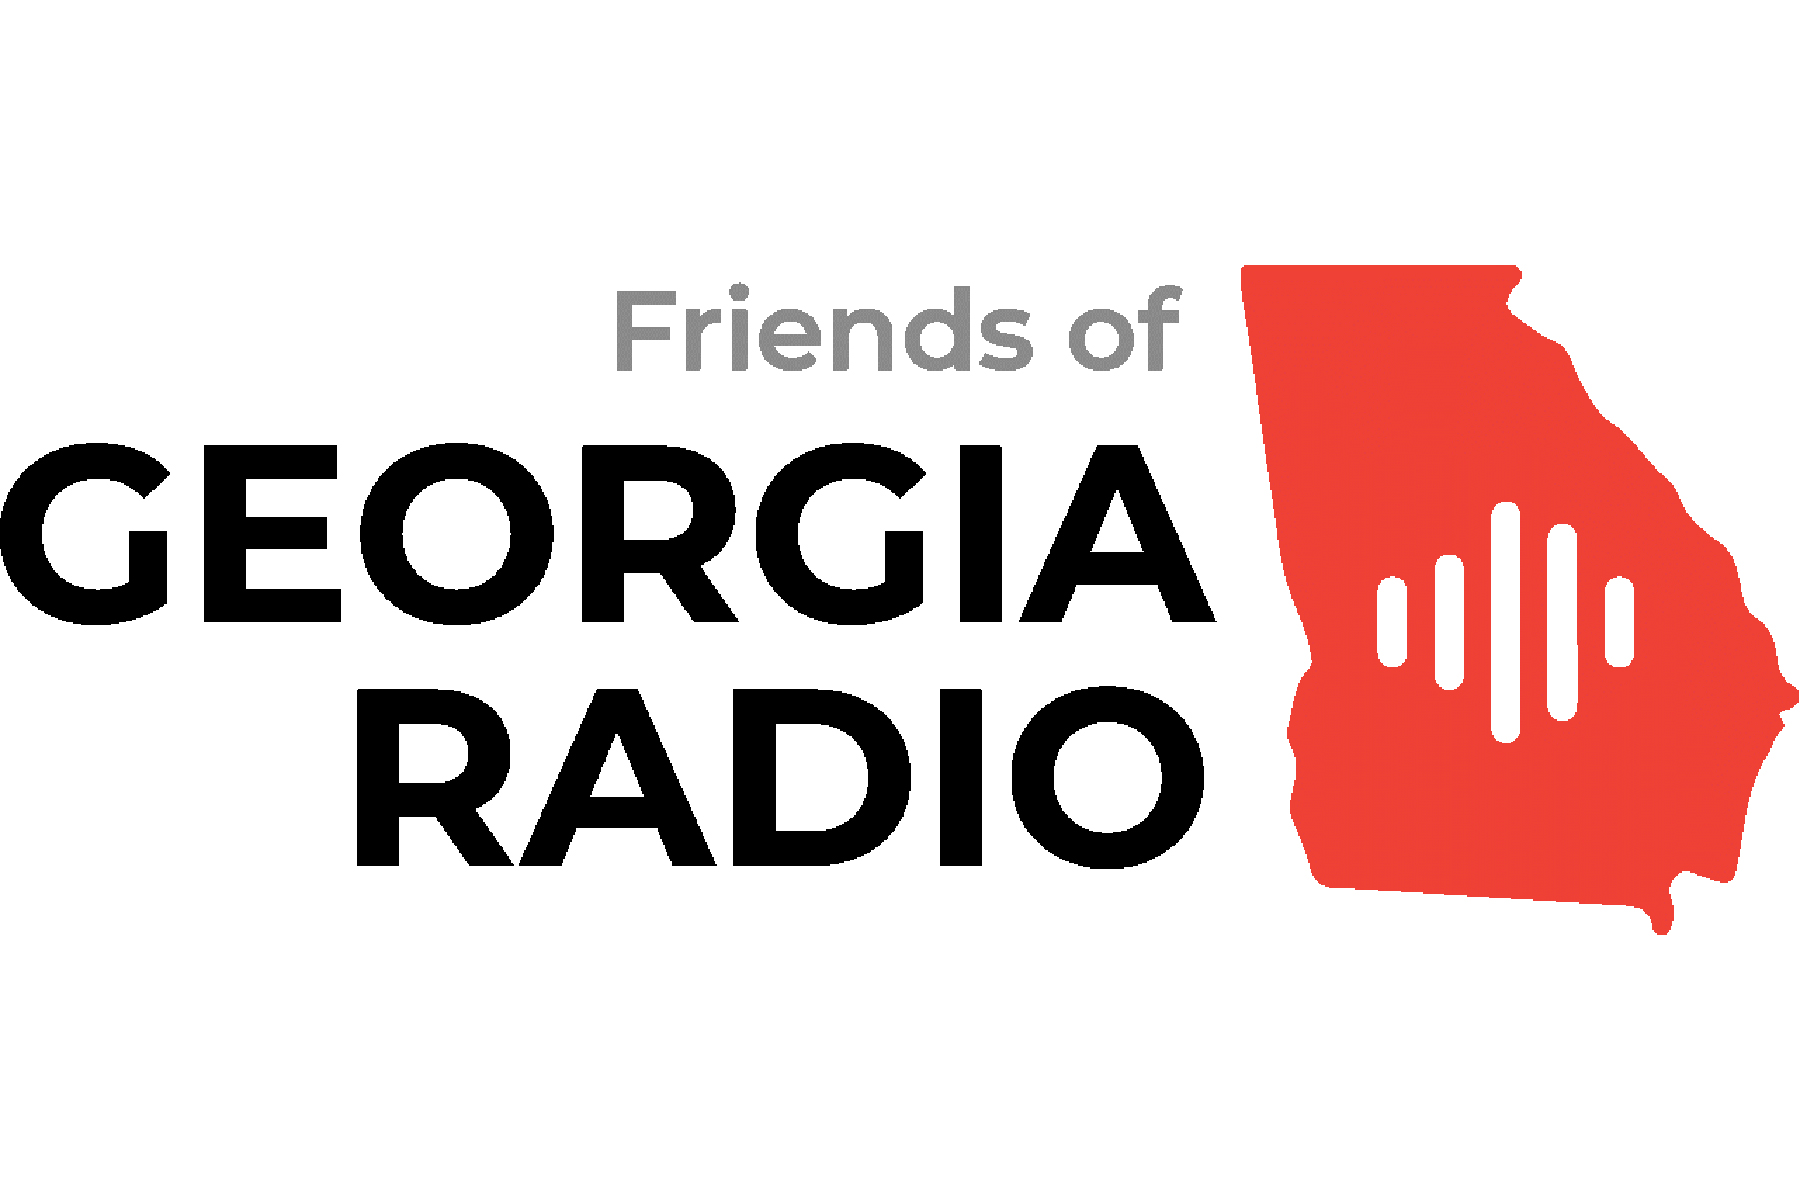 話題の行列 GEORGIA ラジオ elipd.org